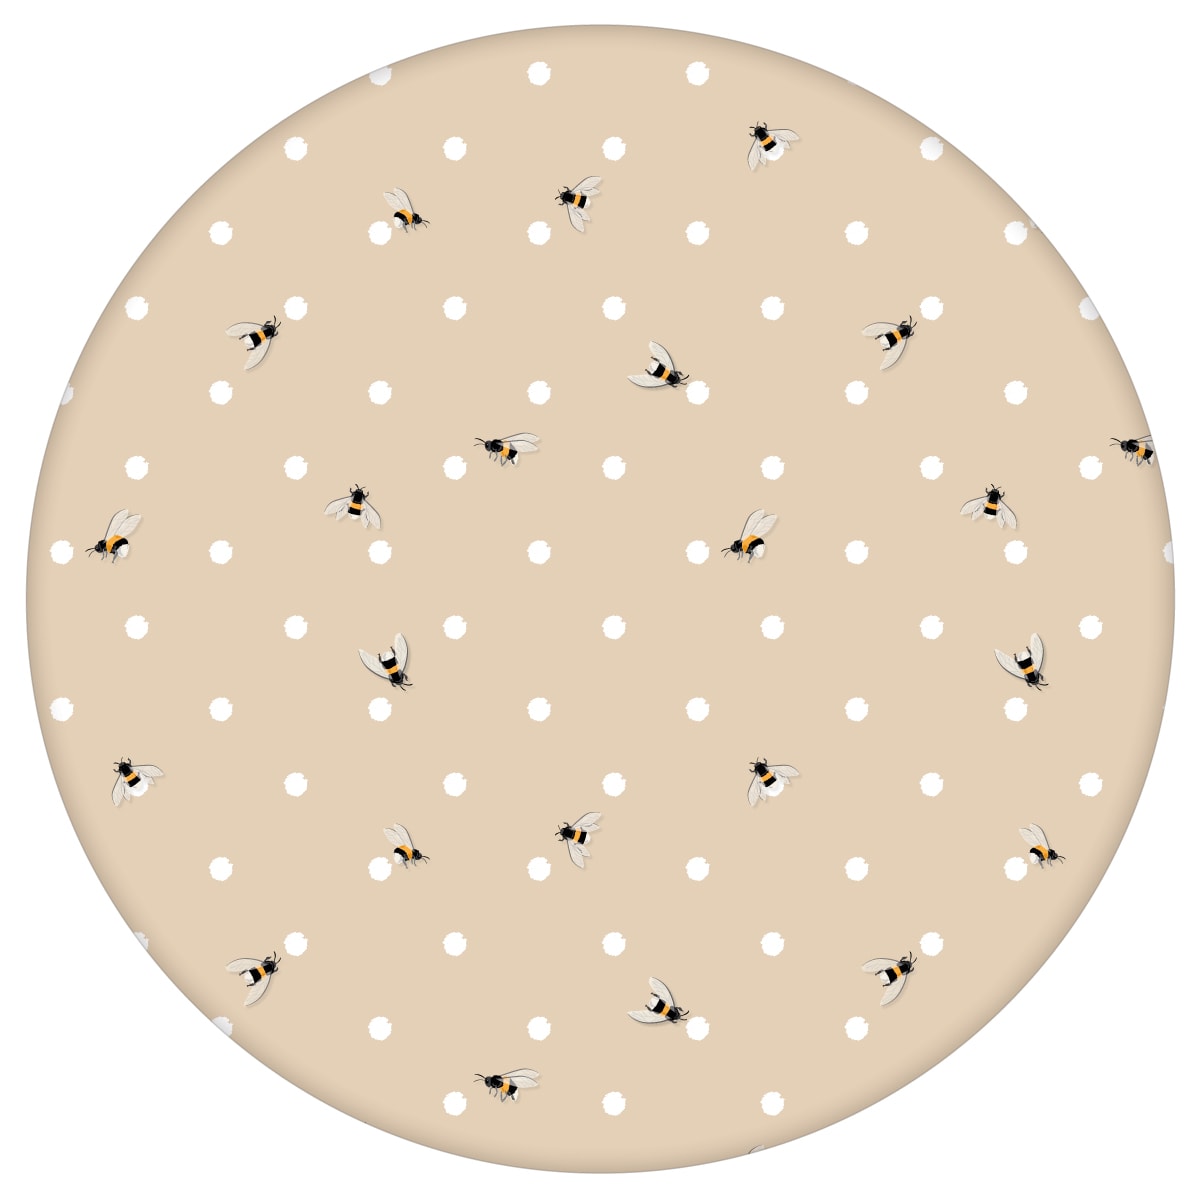 Schöne Tapete "Polka Bee" mit Bienen & Punkten, beige Vlies Tapete moderne Wanddeko für Schlafzimmer aus den Tapeten Neuheiten Exklusive Tapete für schönes Wohnen als Naturaltouch Luxus Vliestapete oder Basic Vliestapete